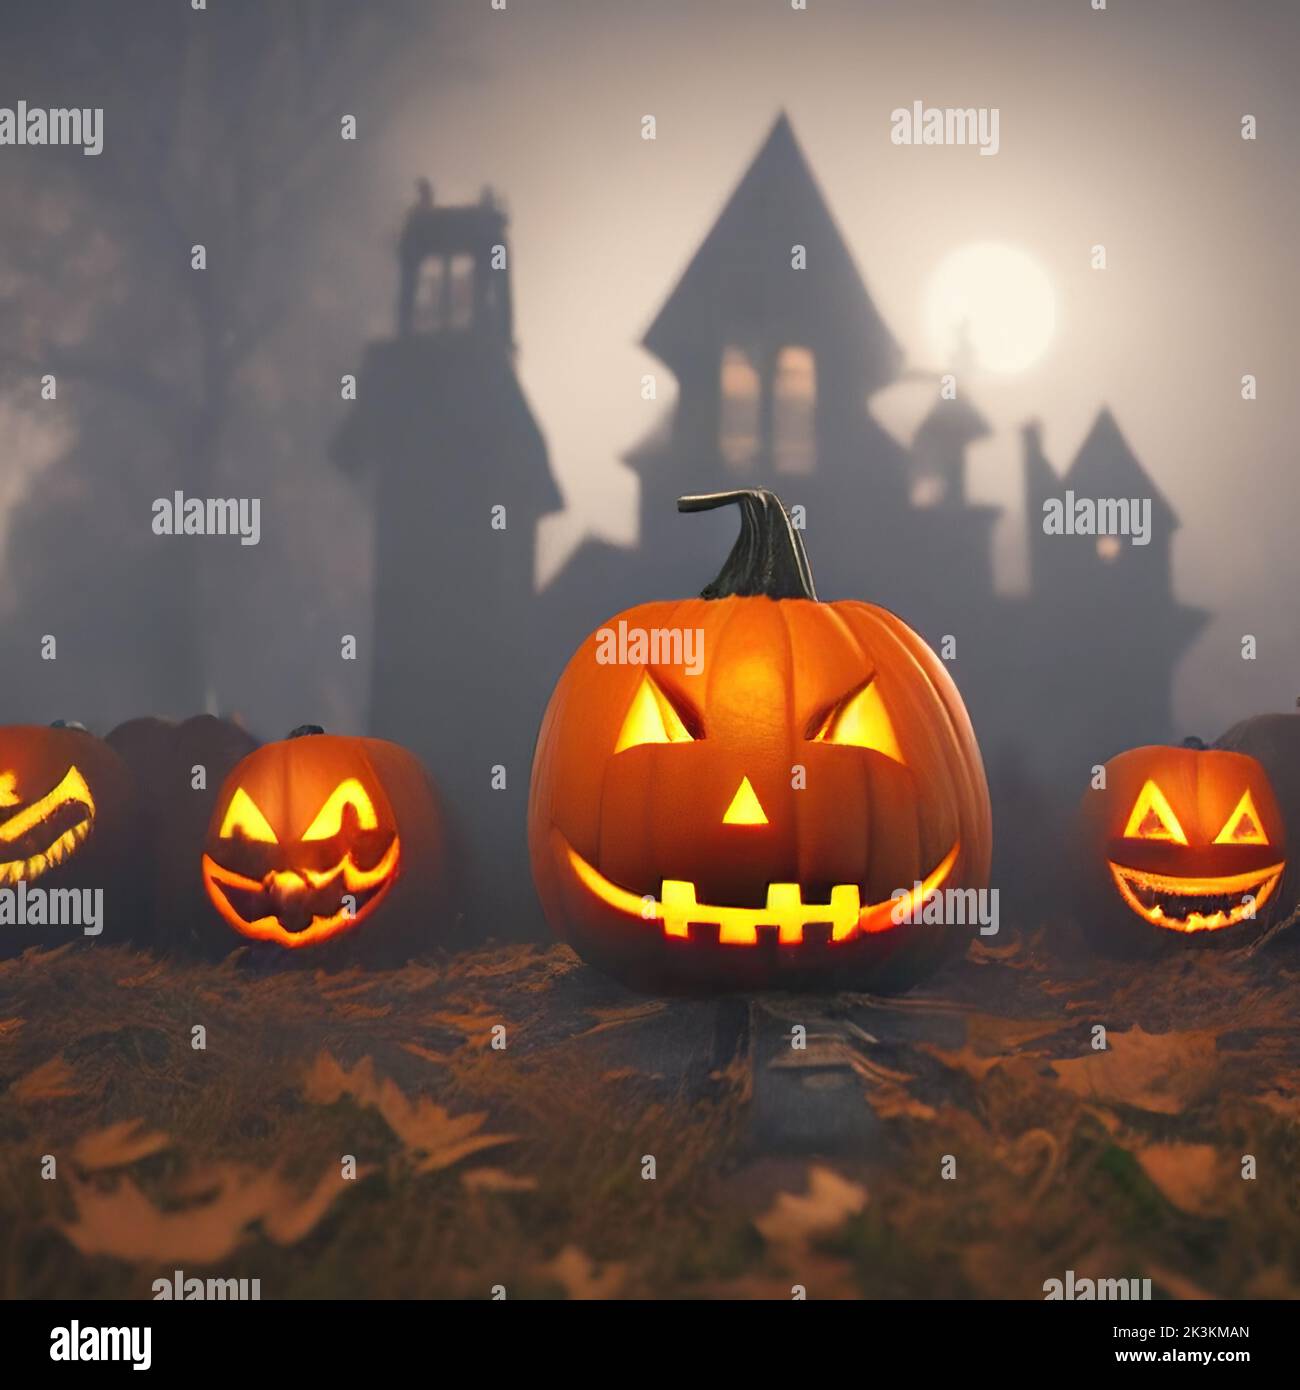 3D Renderización de jacks-o-linternas de Halloween descansando en un suelo con casa de brujas en el fondo bajo la luz de la luna Foto de stock